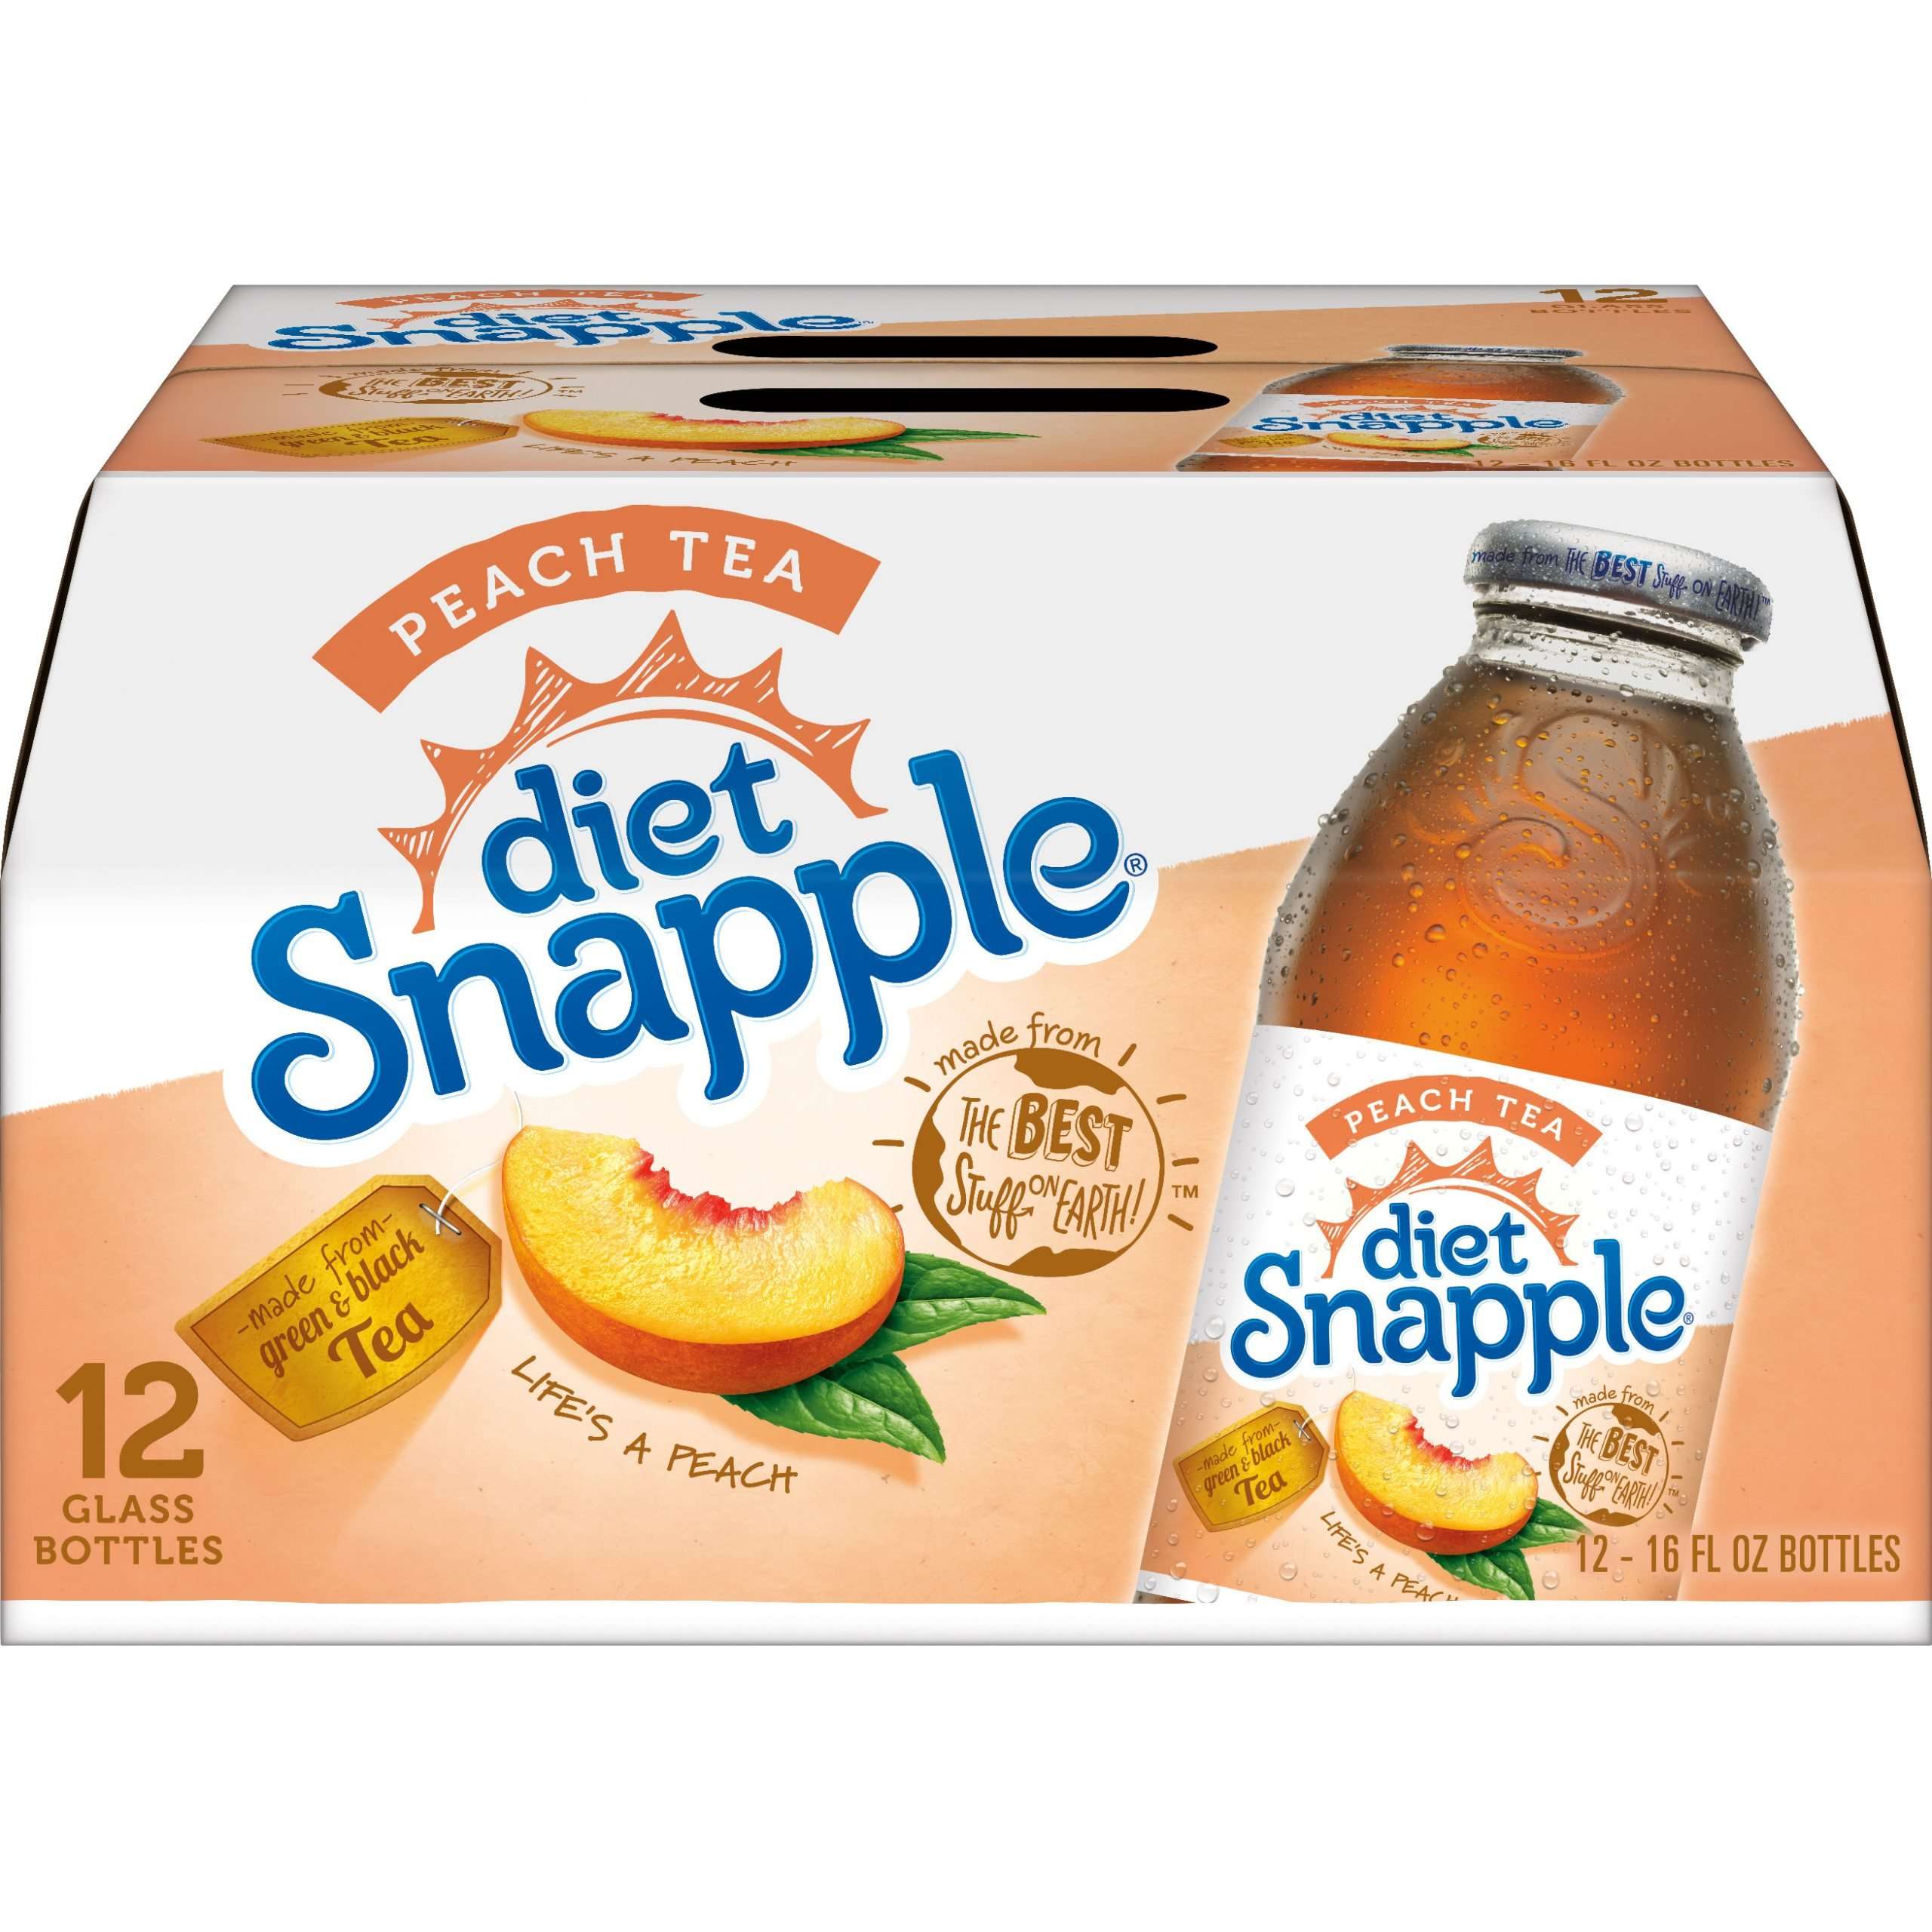 Diet Snapple Peach Tea, 16 fl oz glass bottles, 12 pack ...